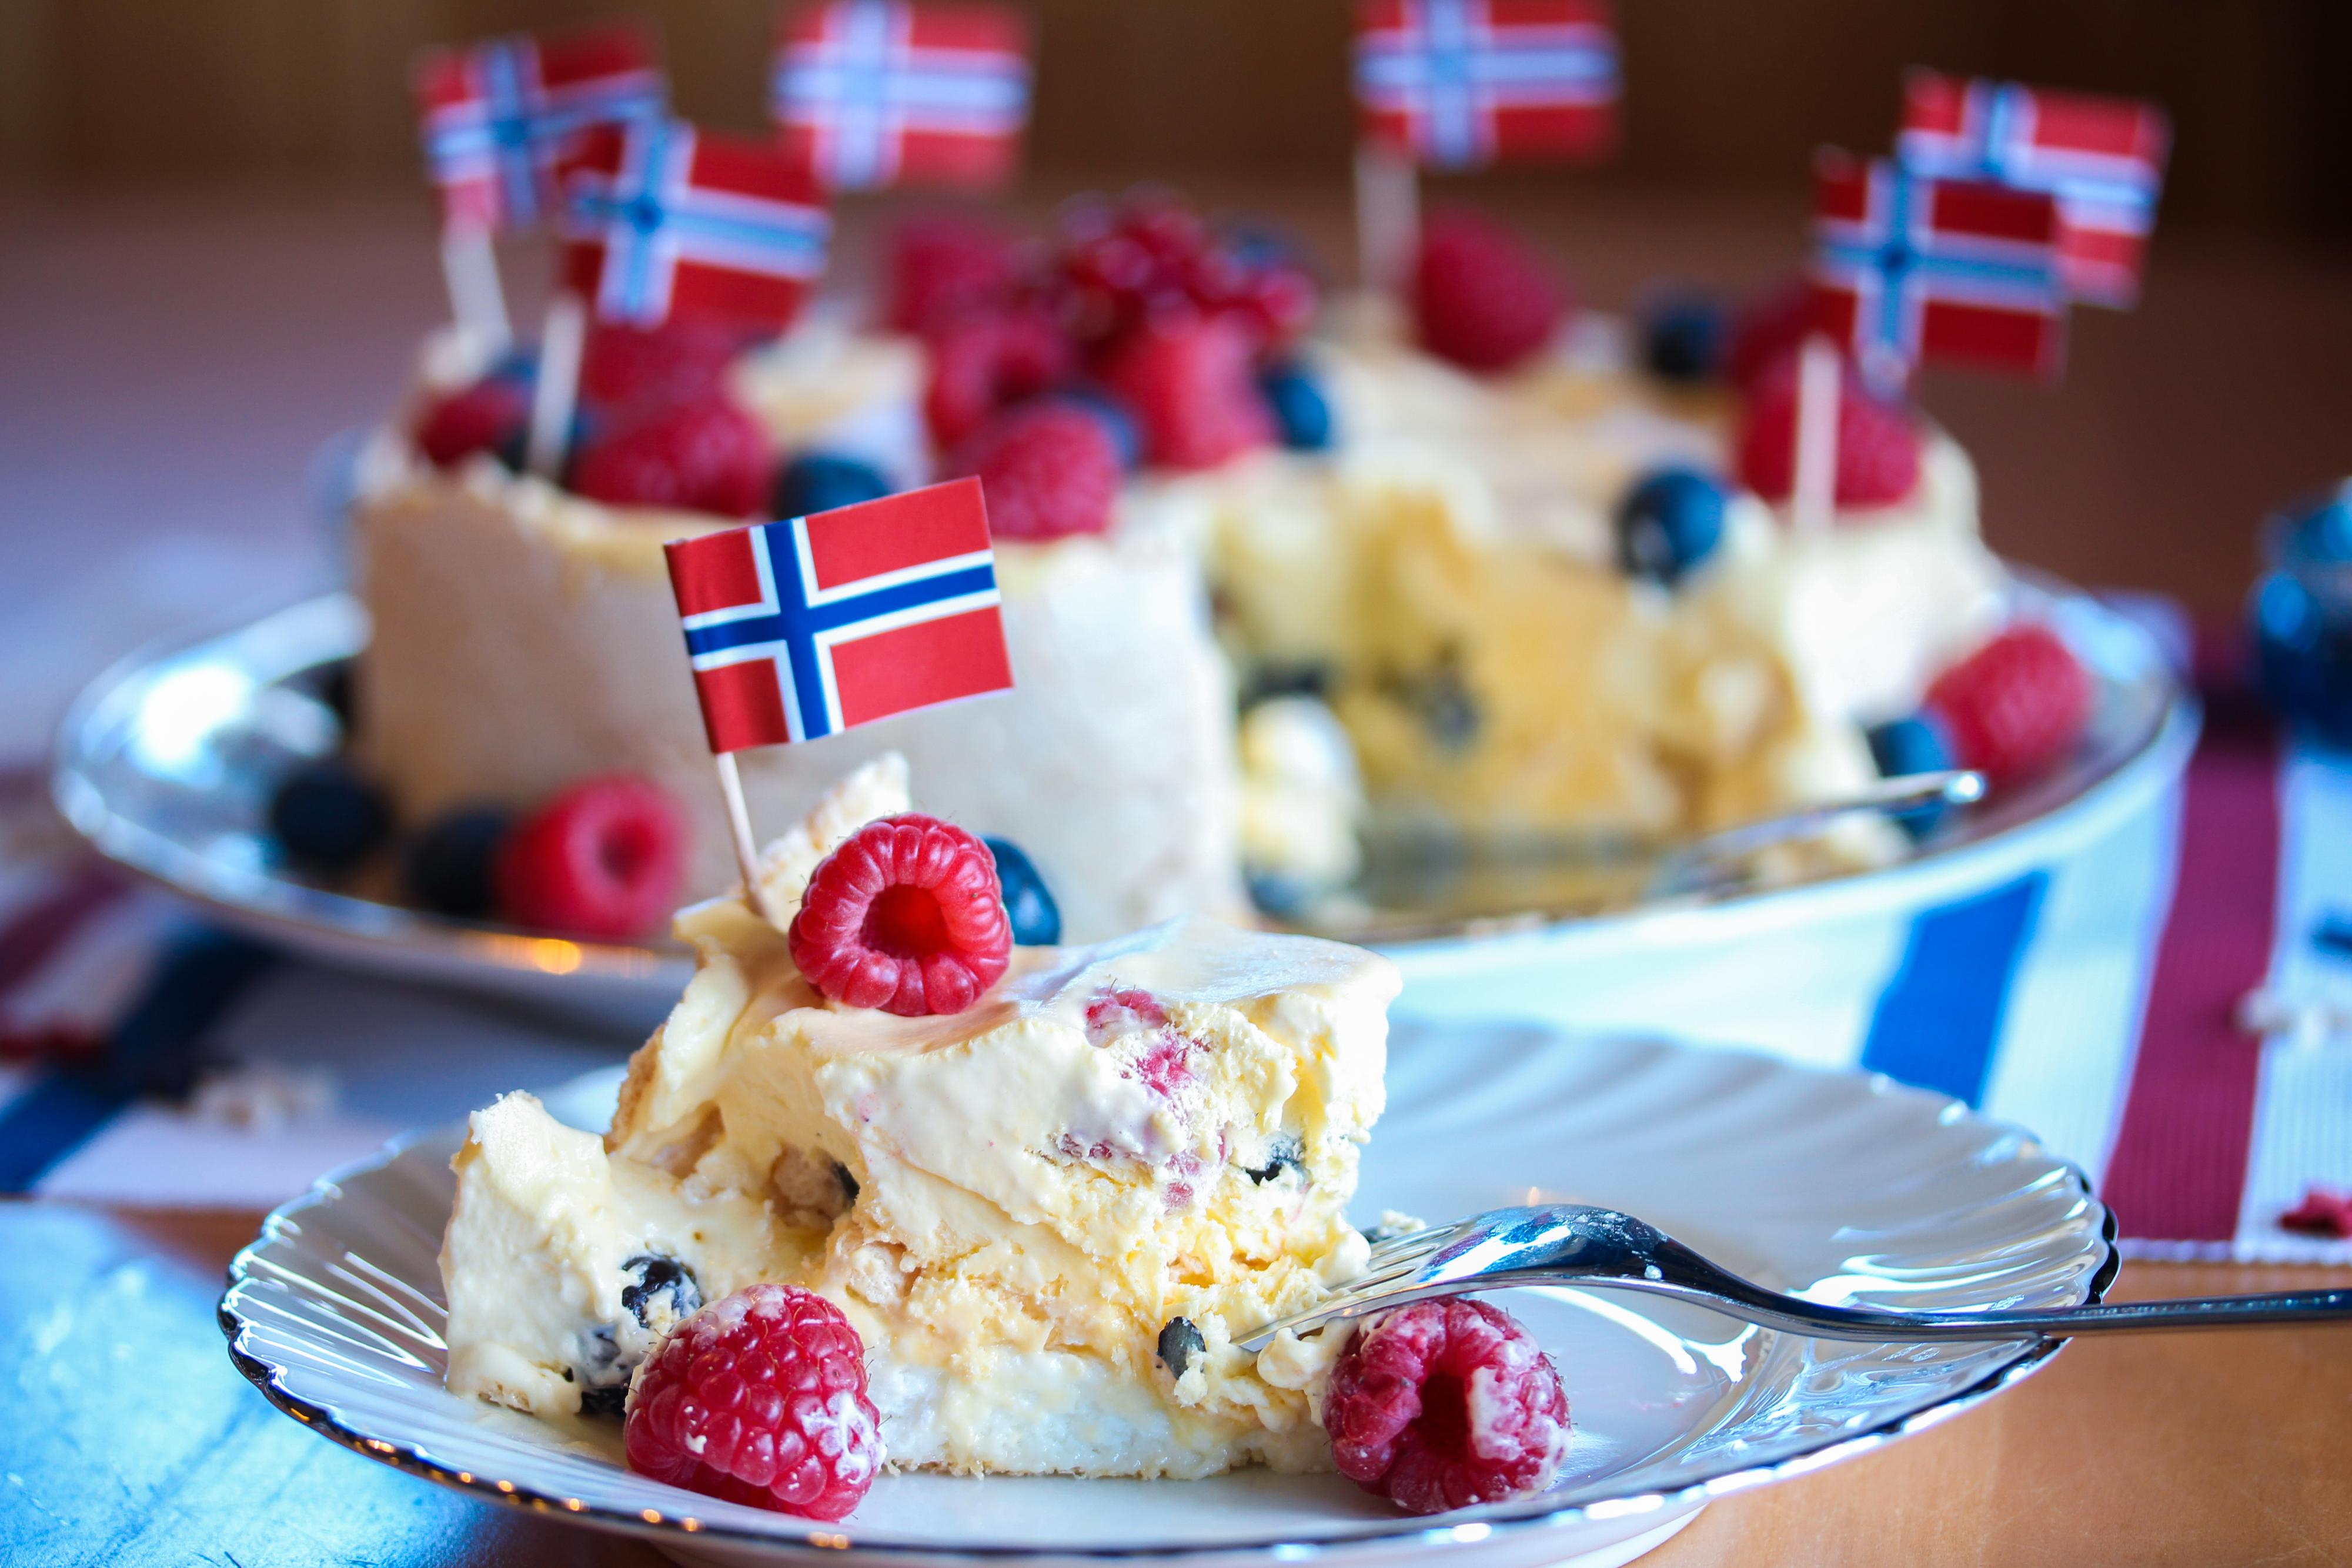 Pynt iskaken med friske bær og norske flagg.